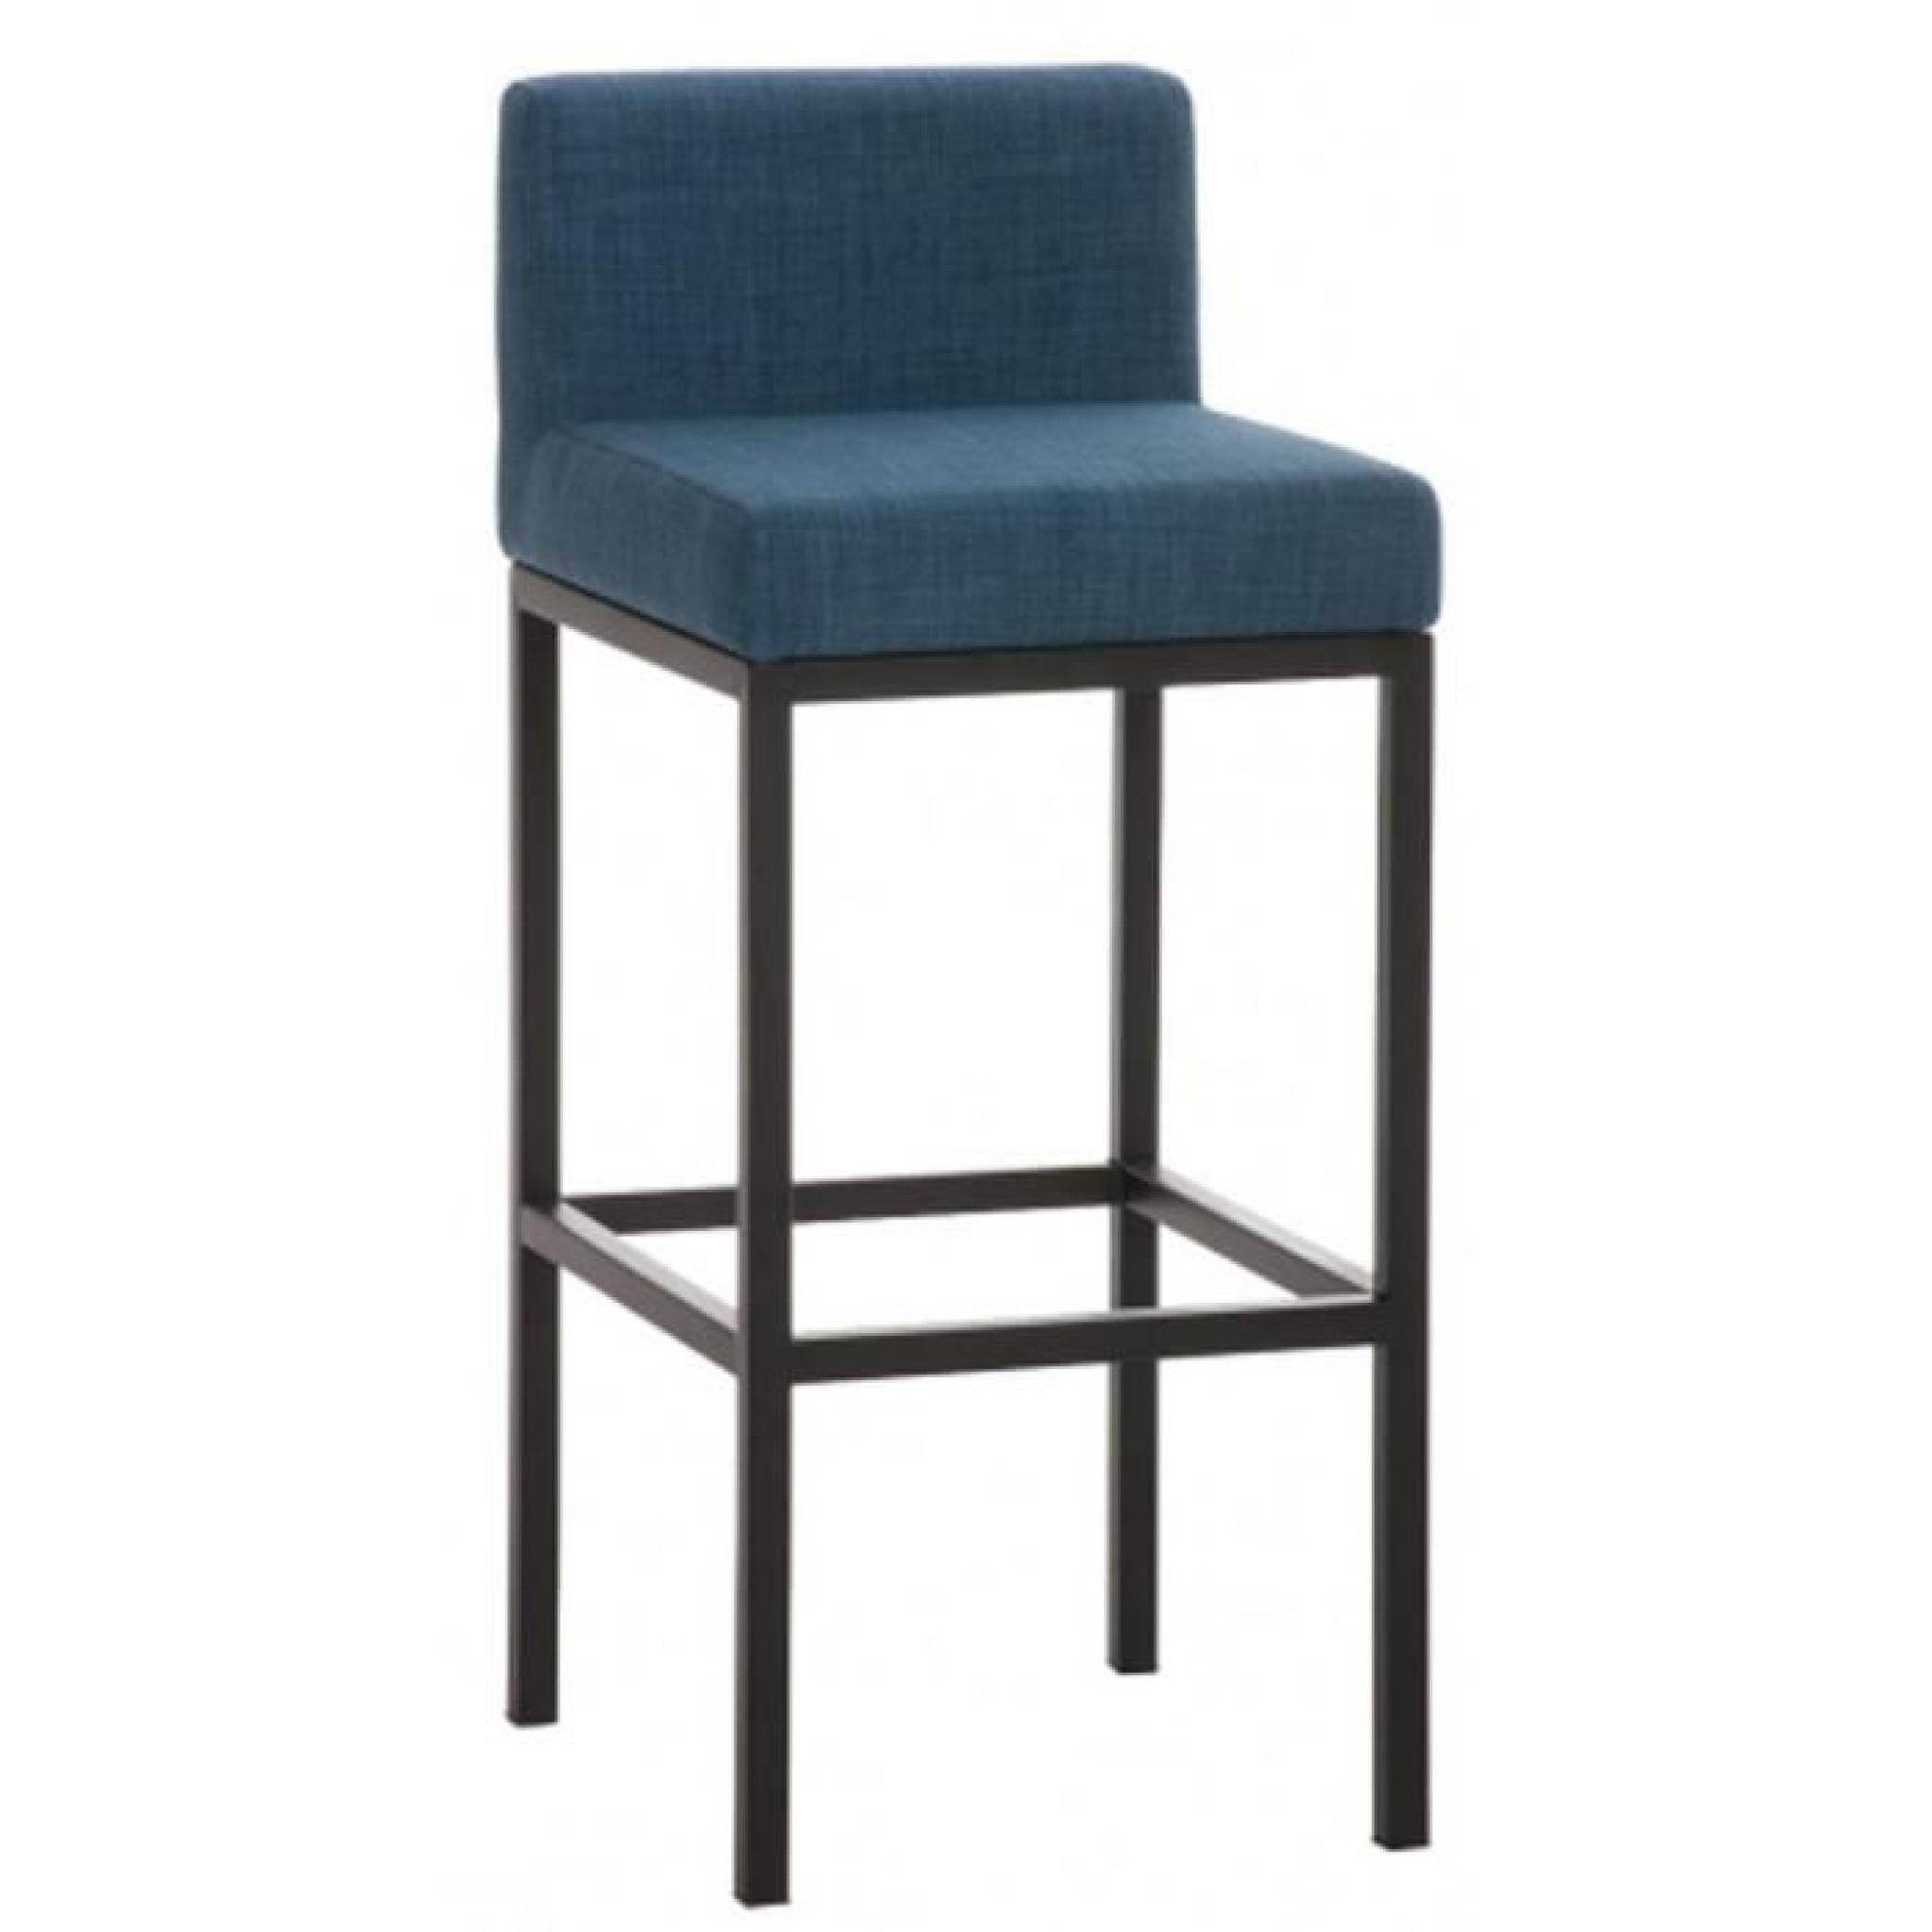 Chaise de bar en tissu coloris bleu, H 96,5 x L 40 x P 44,5 cm